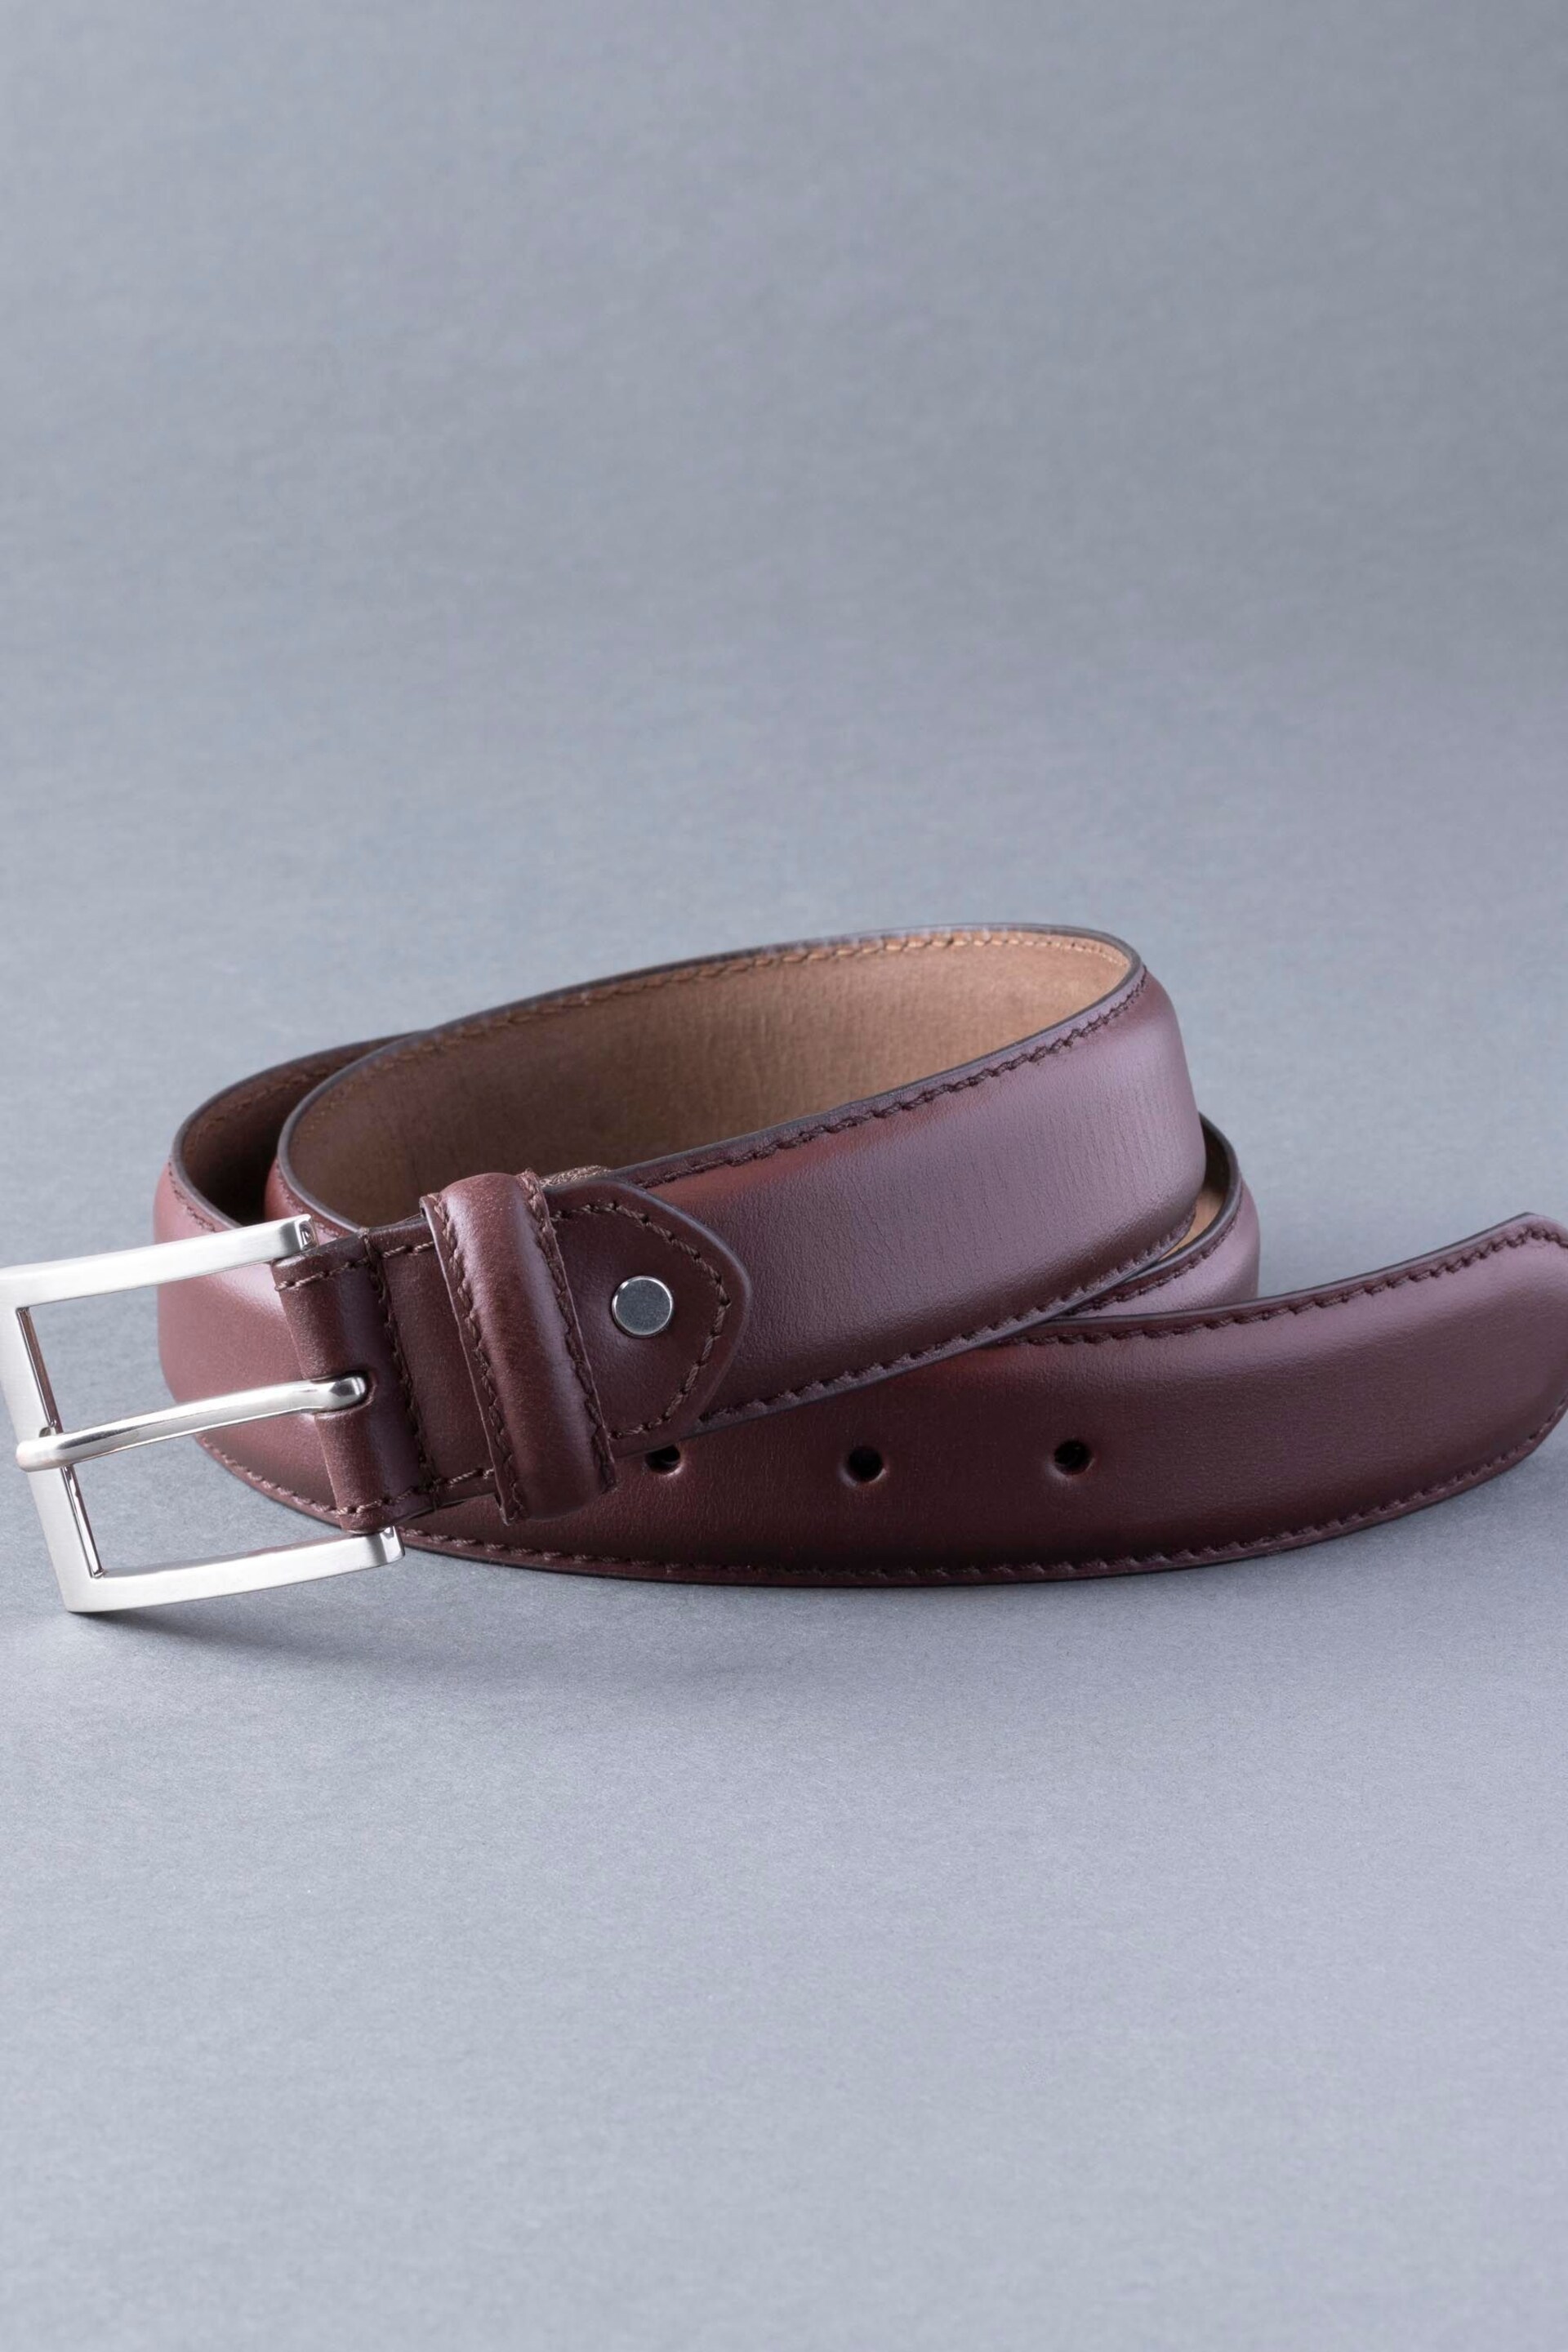 Lakeland Leather Staveley Leather Belt - Image 3 of 6